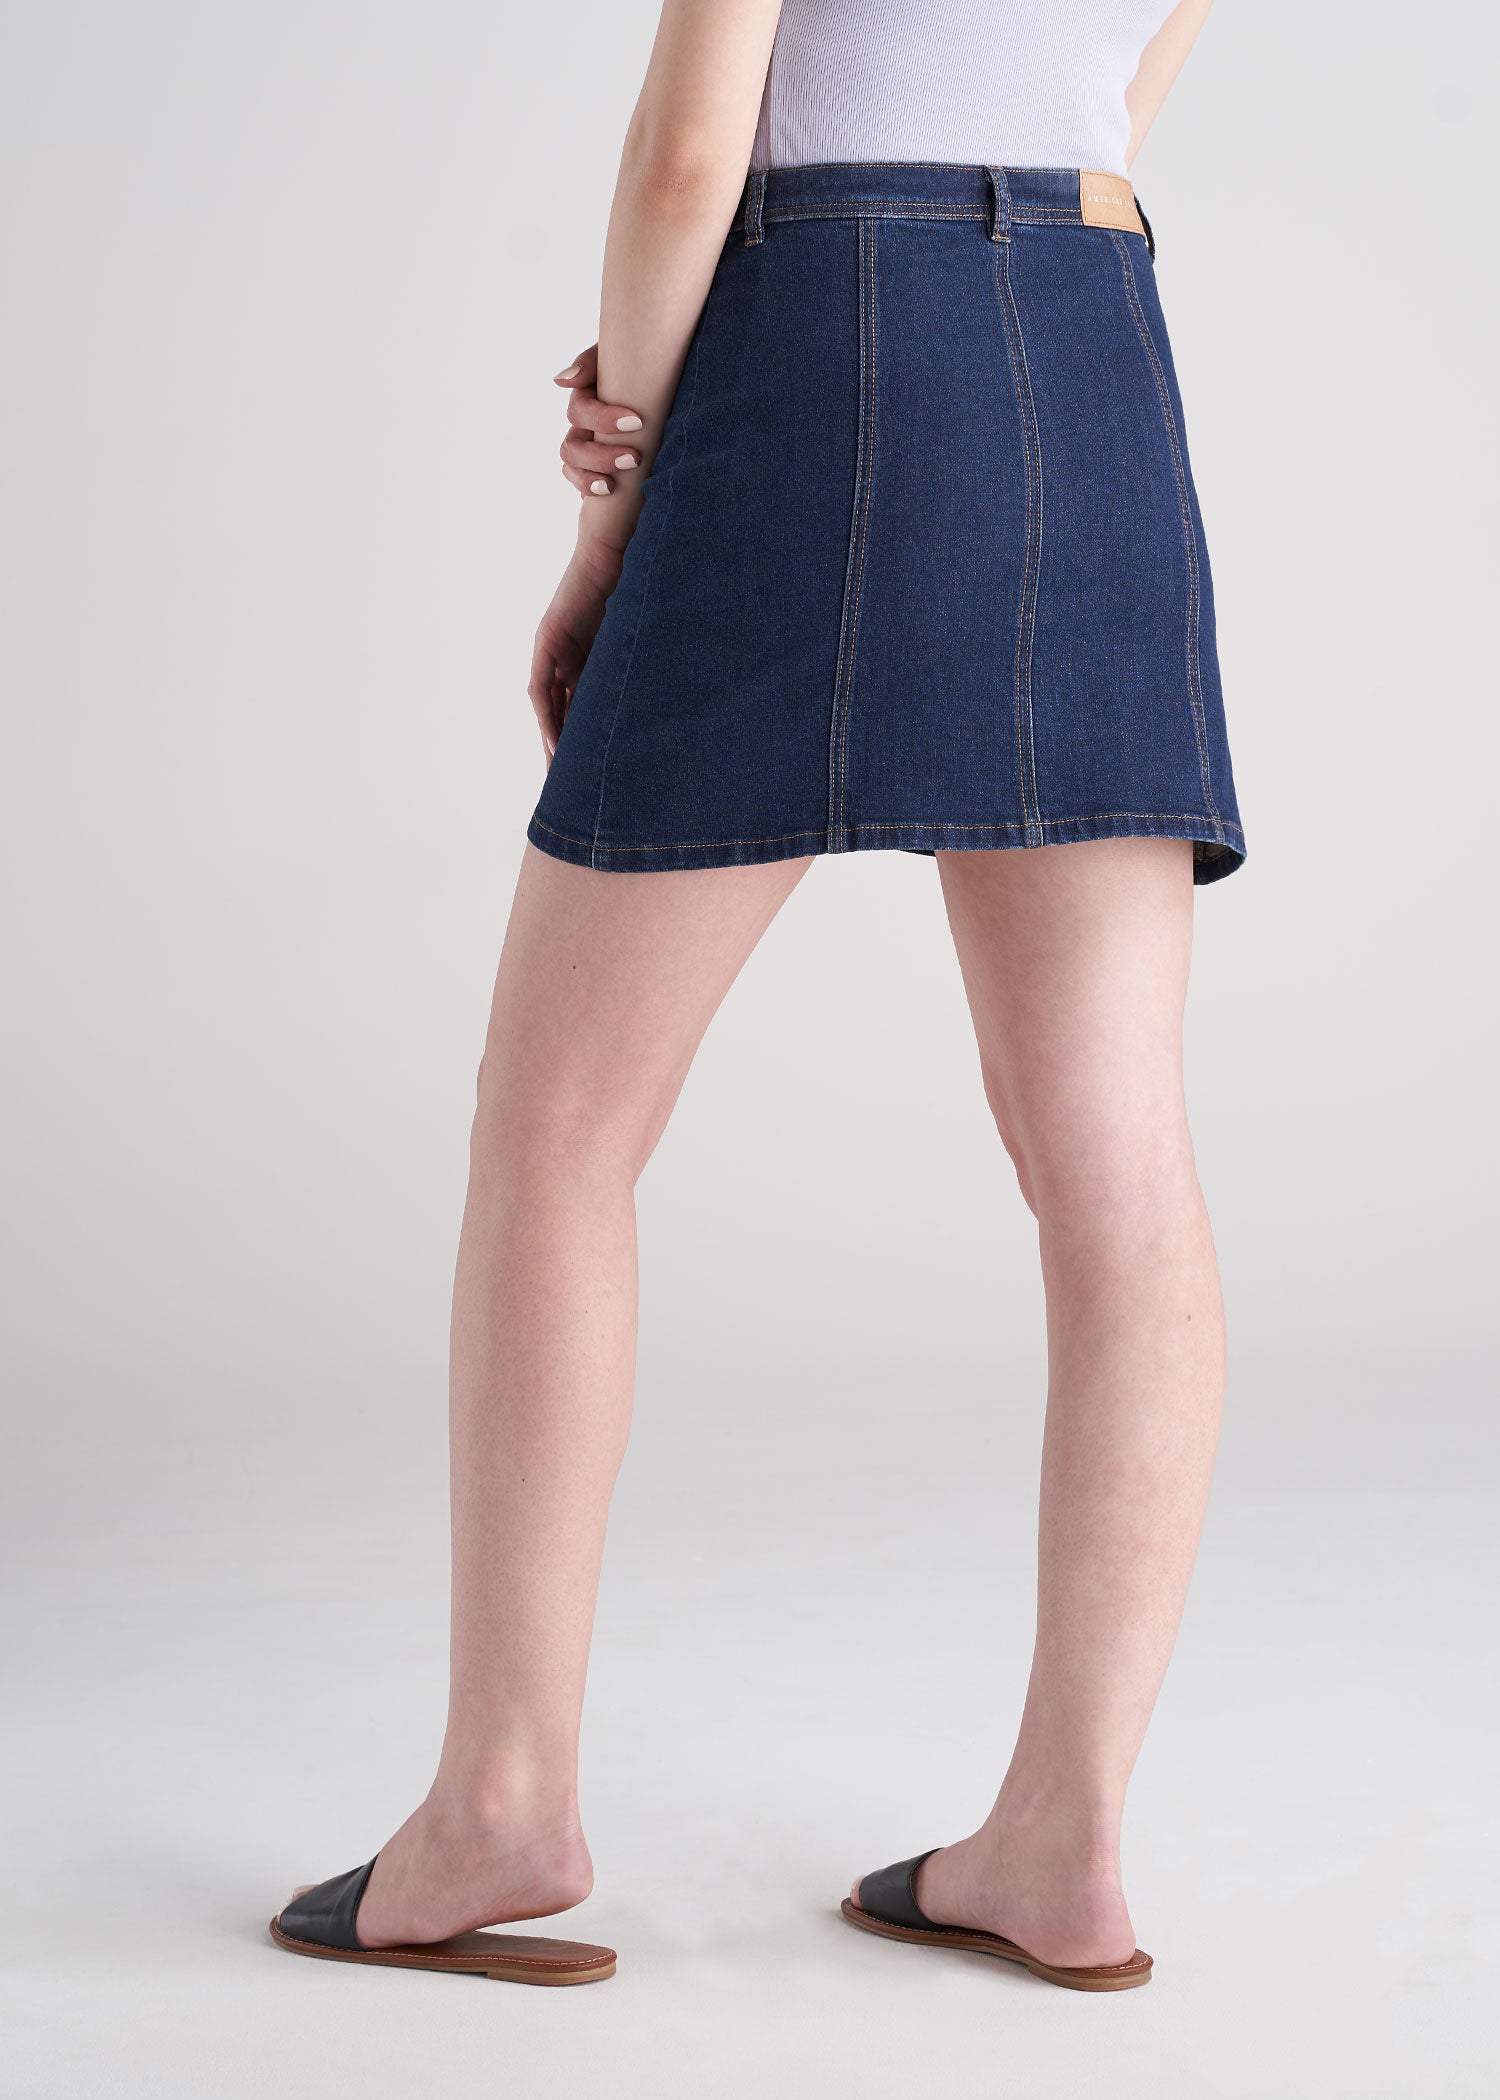 Allegra K Women's Zip Front Slim Fit High Waist Mini Denim Skirts Dark Blue  Large : Target